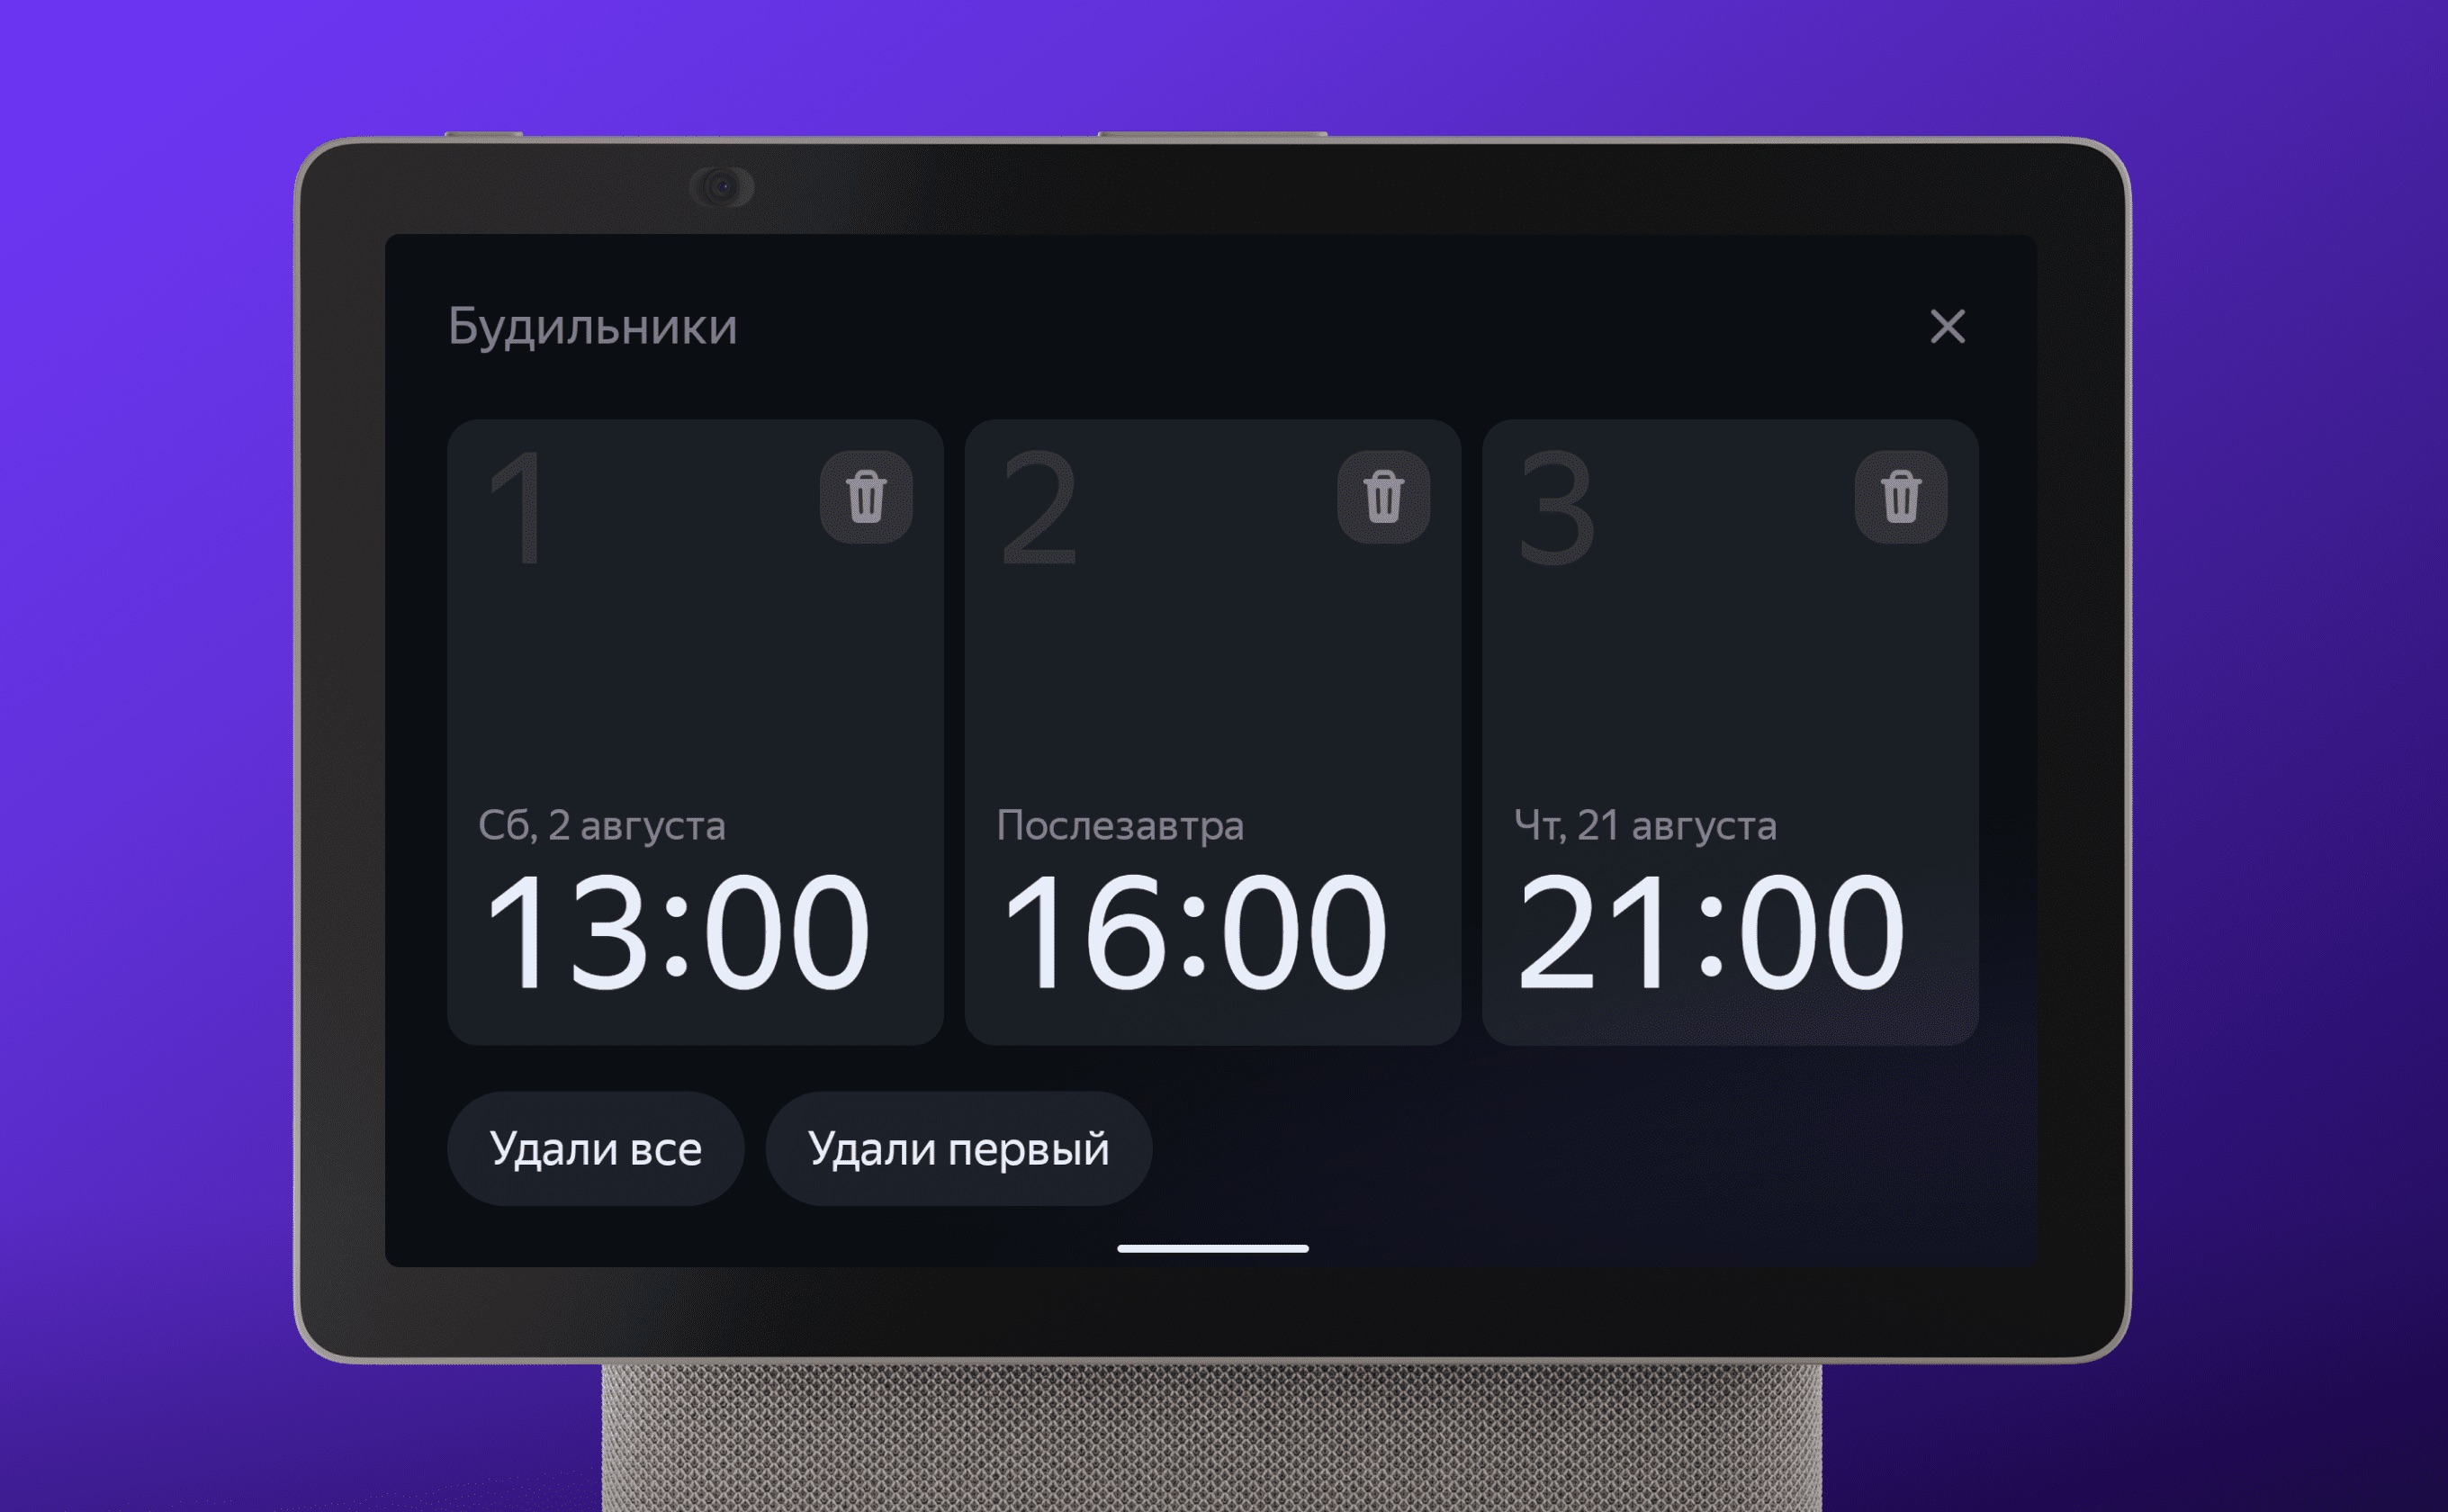 Вышло июльское обновление Алисы и умных устройств Яндекса